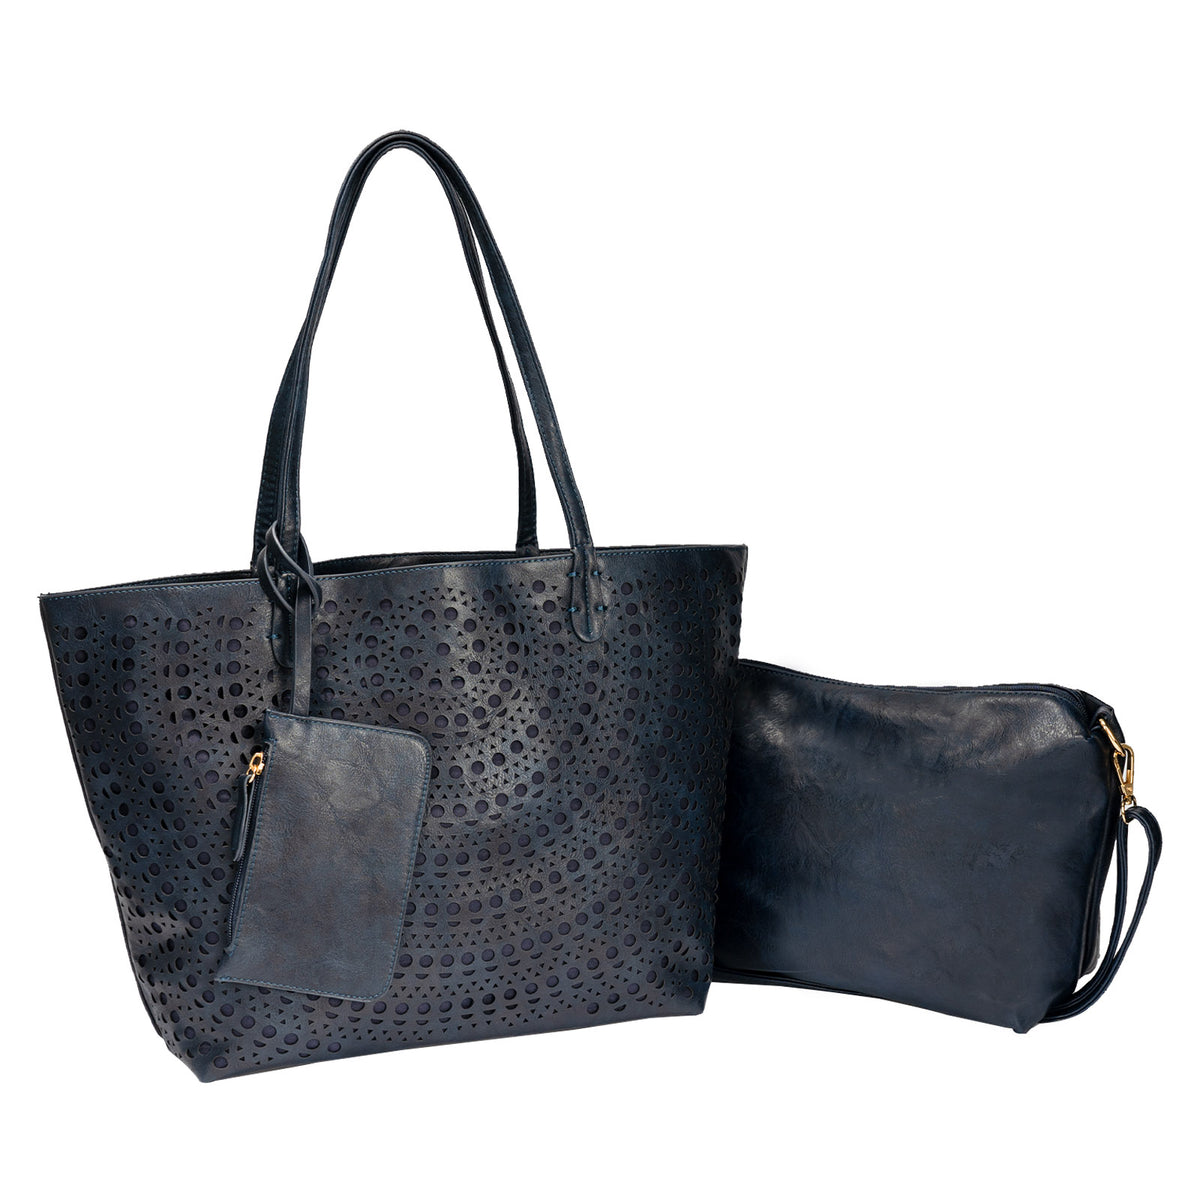 LAVAWA Concealed Carry Leopard Pattern Studs Hobo Wallet Shoulder Handbag Purse Set 2pcs, Black